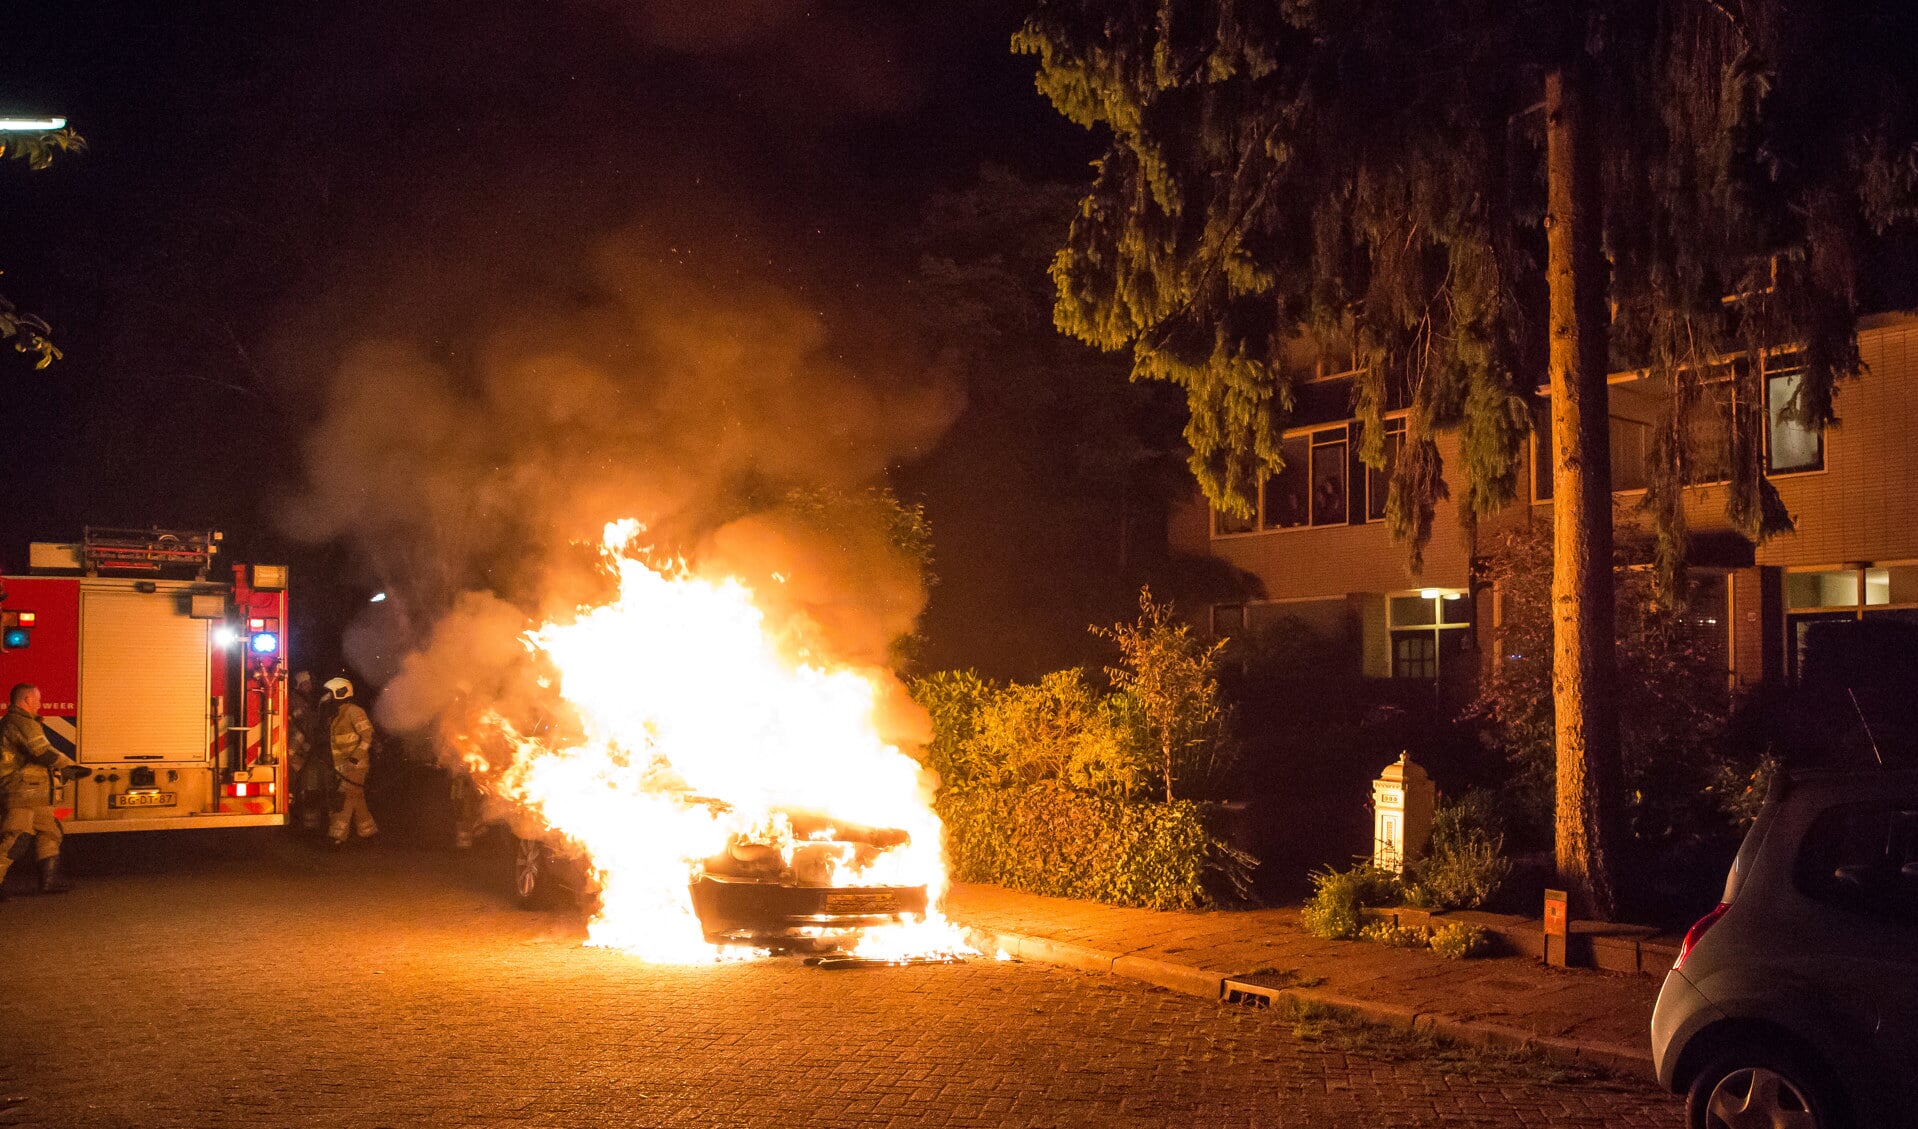 Om 2.40 uur werden bewoners van de Fockema Andrealaan in Baarn wakker van een brandende Range Rover. De onmiddellijk gealarmeerde brandweer kon niet voorkomen dat de auto geheel uitbrandde. Van verschillende buurtbewoners werd door de politie een verklaring opgenomen. De recherche gaat later op de d